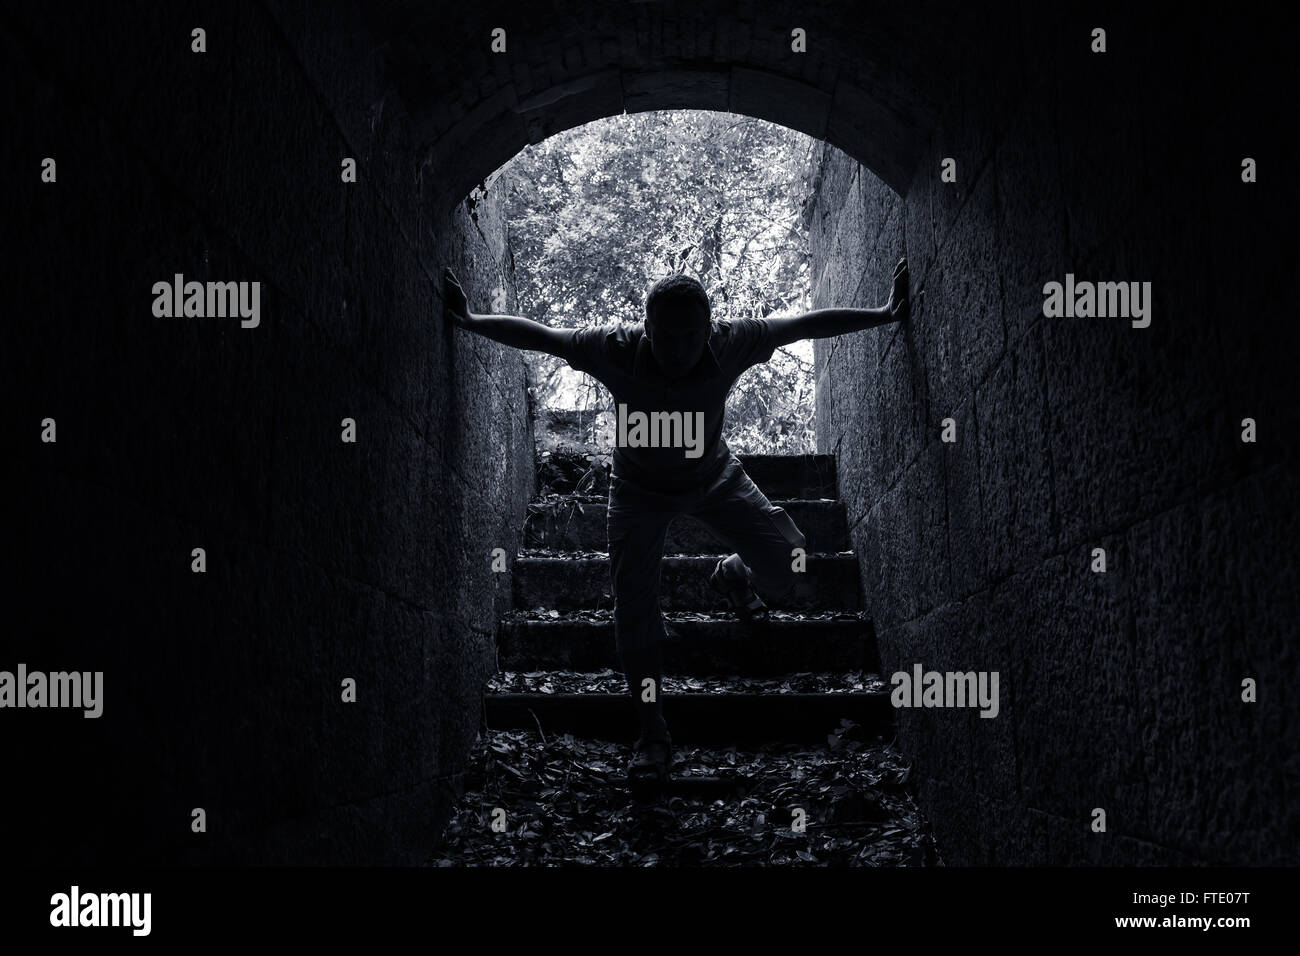 Giovane uomo entra nel buio del tunnel di pietra in bianco e nero lo foto chiave Foto Stock